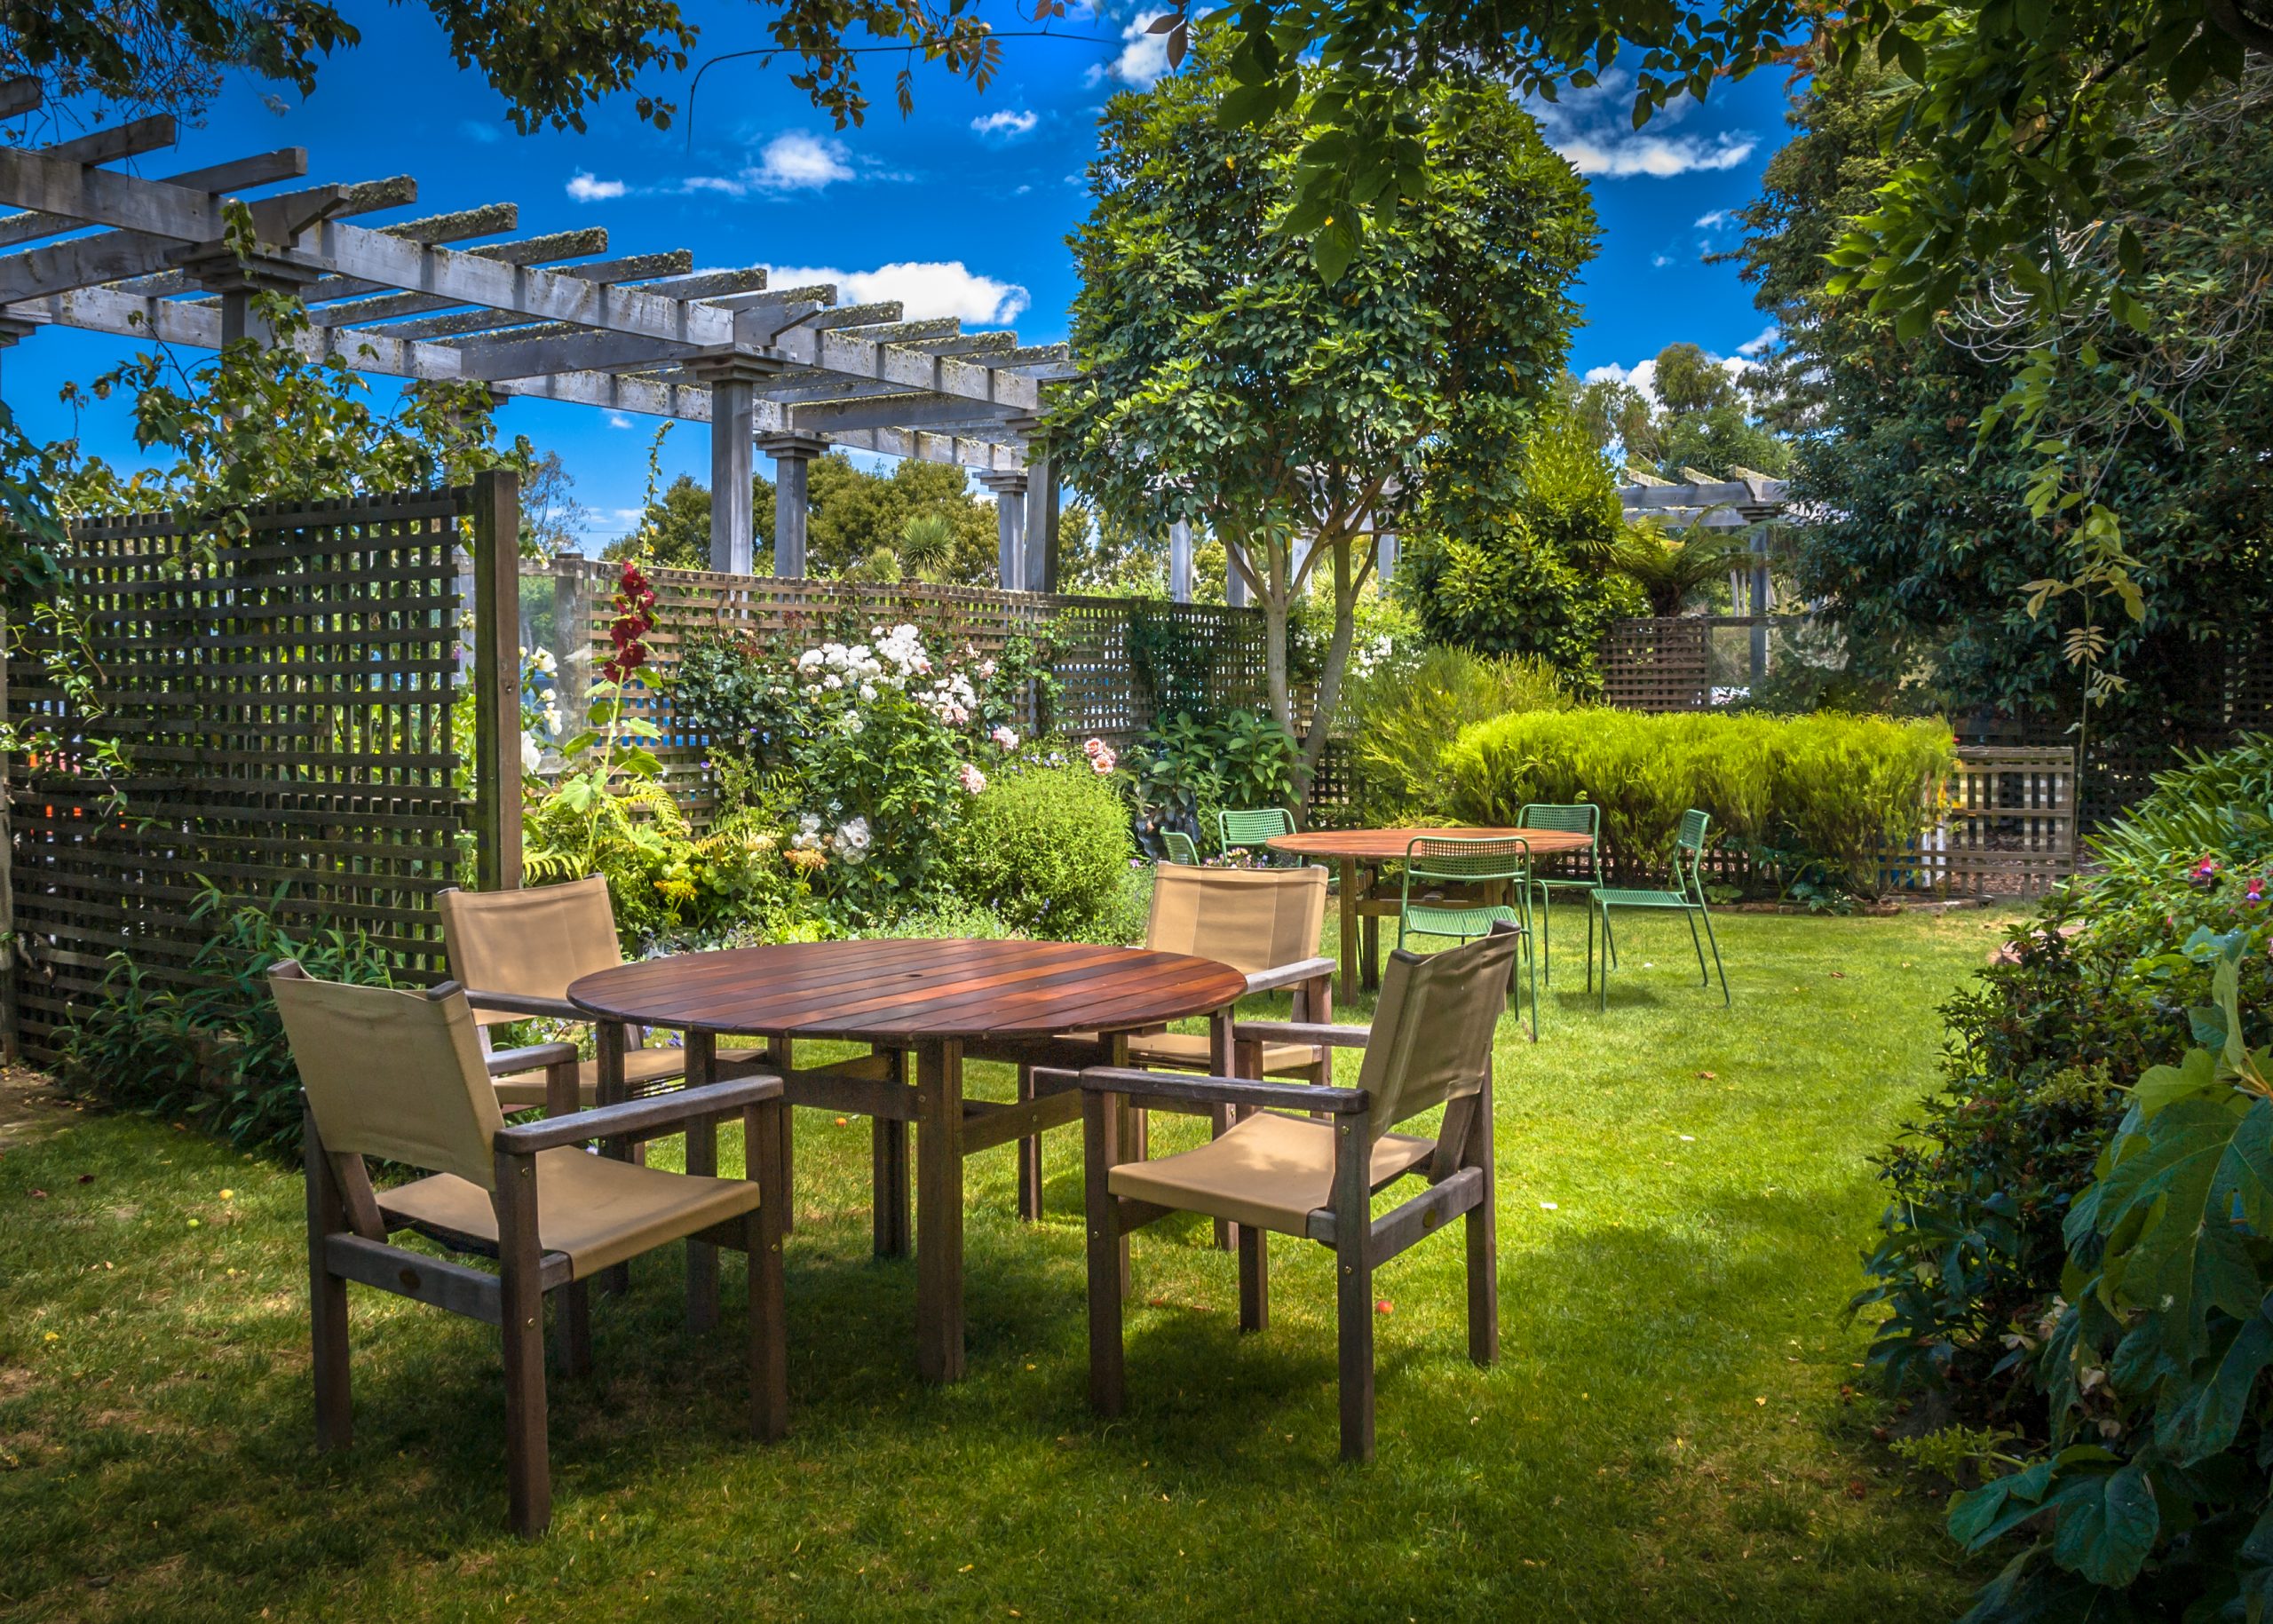 Transform Your Outdoor Space: 5 Home Garden Design Ideas